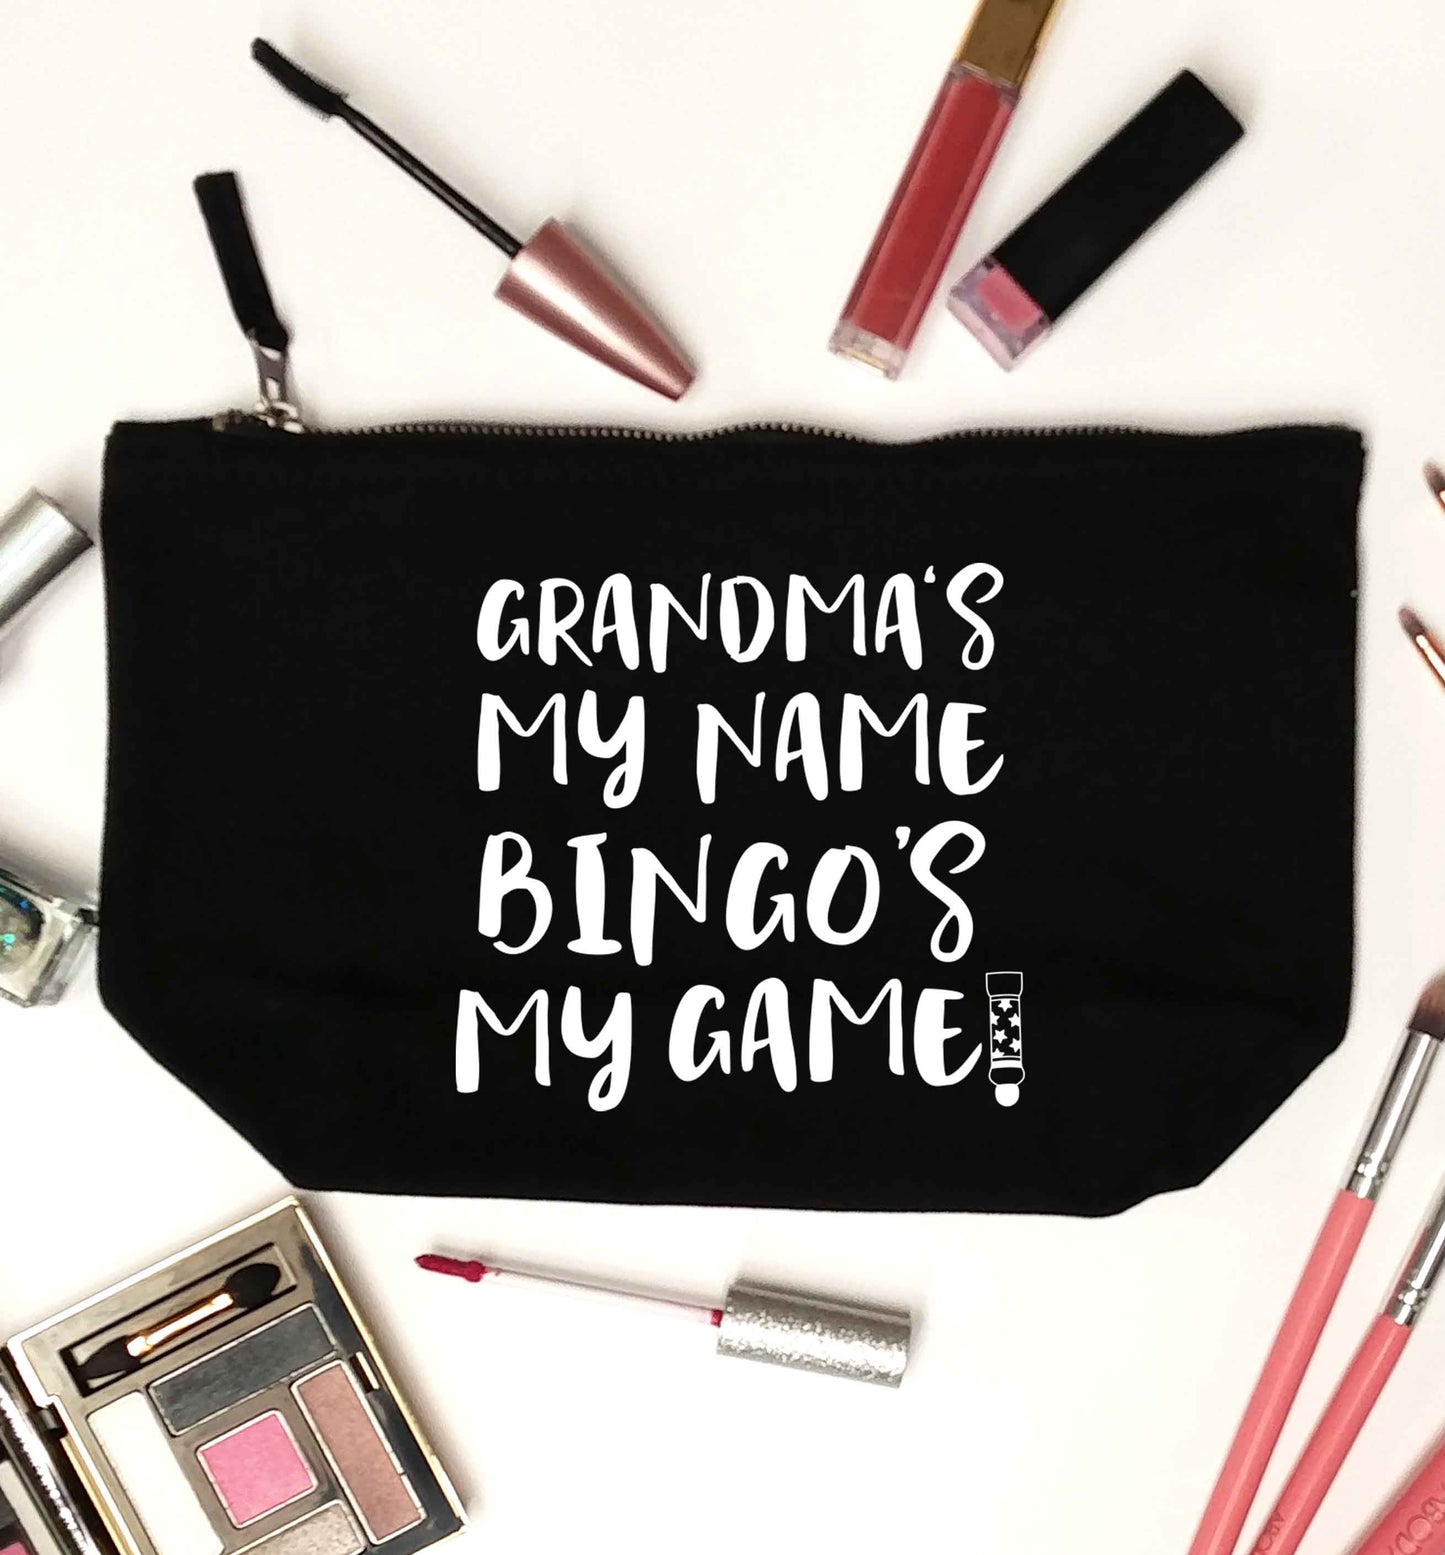 Grandma's my name bingo's my game! black makeup bag